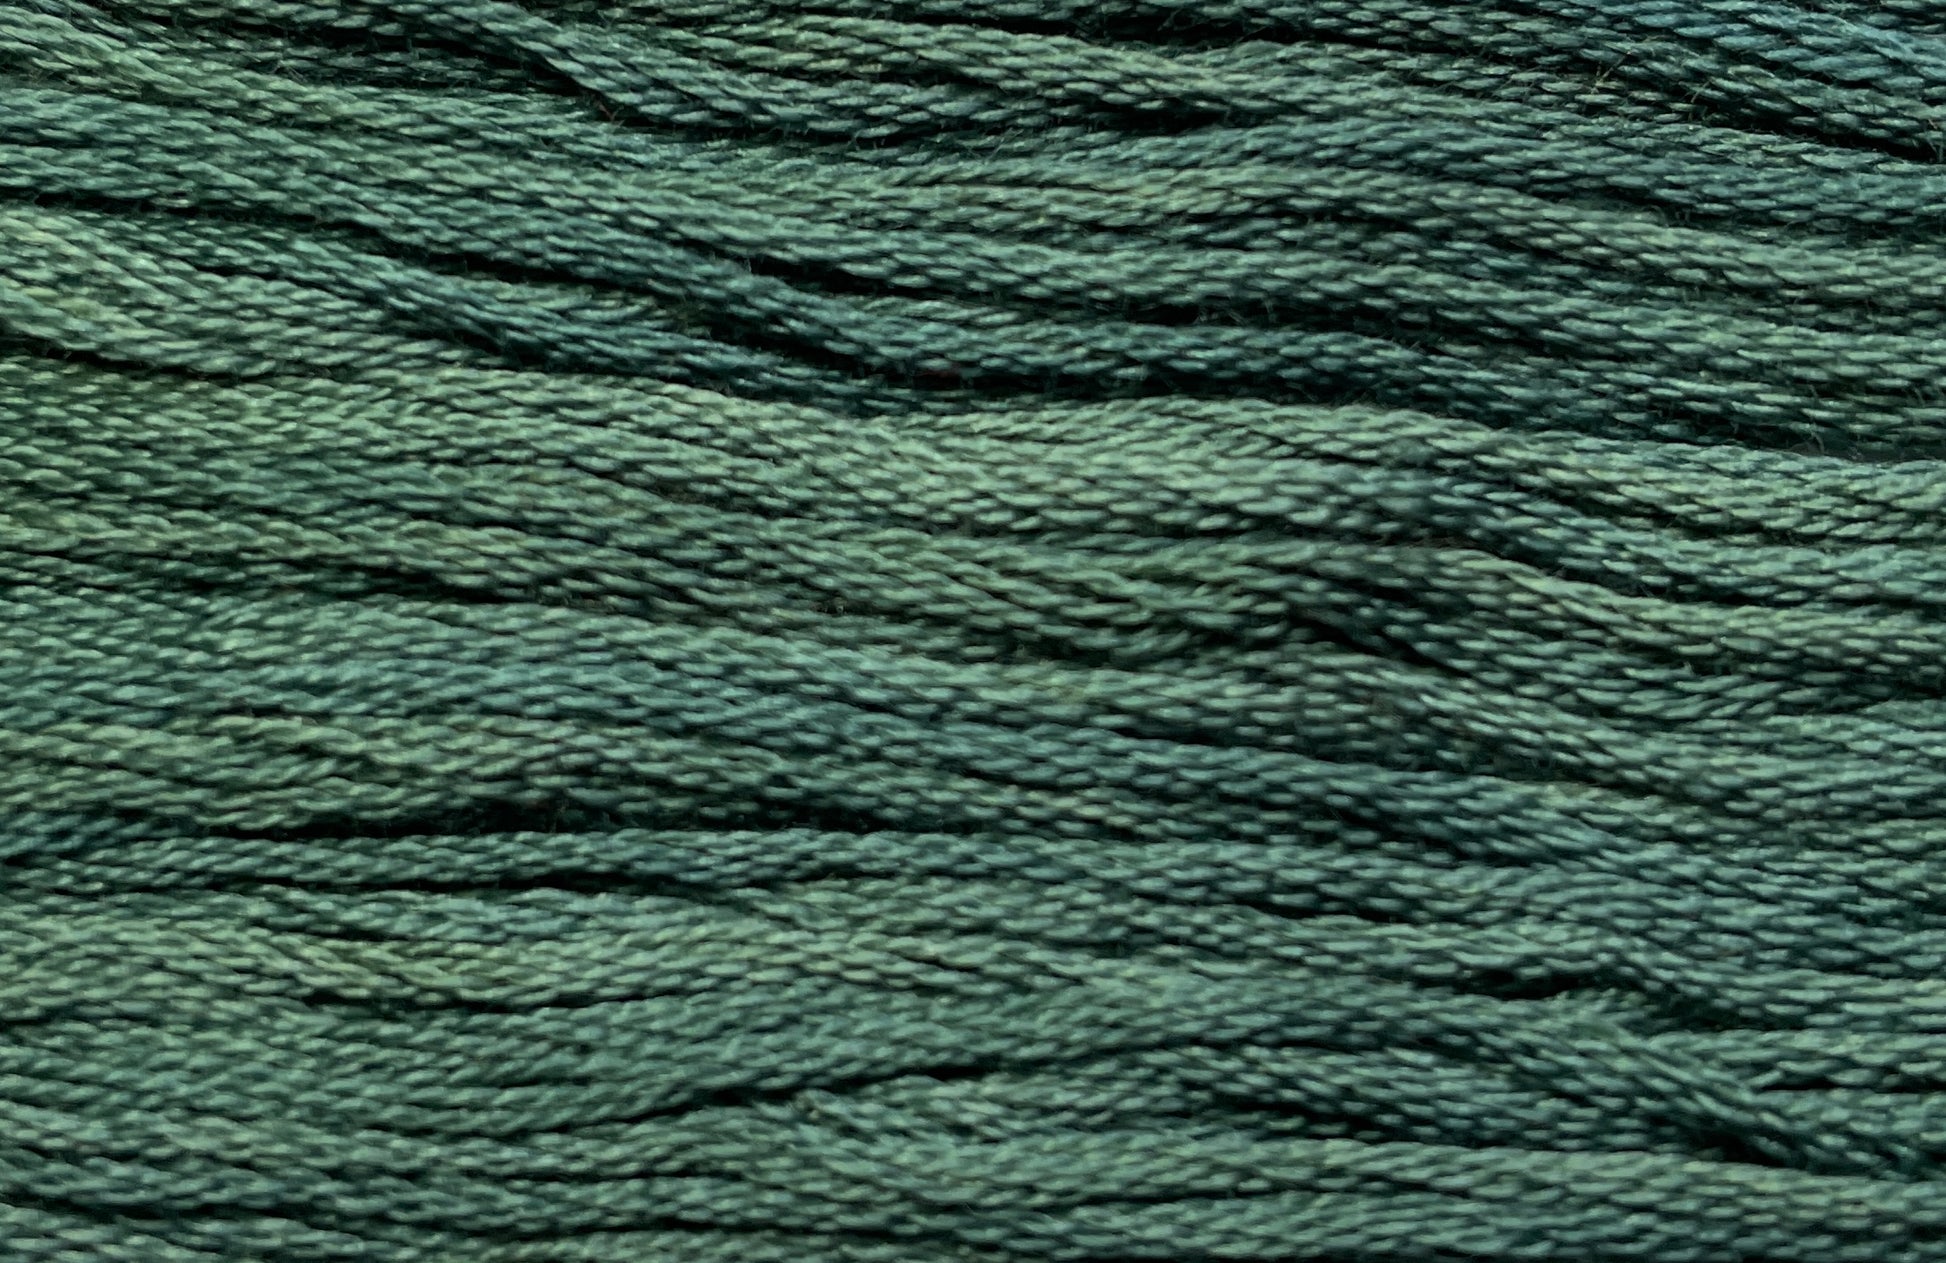 Brethren Blue - Gentle Arts Cotton Thread - 5 yard Skein - Cross Stitch Floss, Thread & Floss, Thread & Floss, The Crafty Grimalkin - A Cross Stitch Store